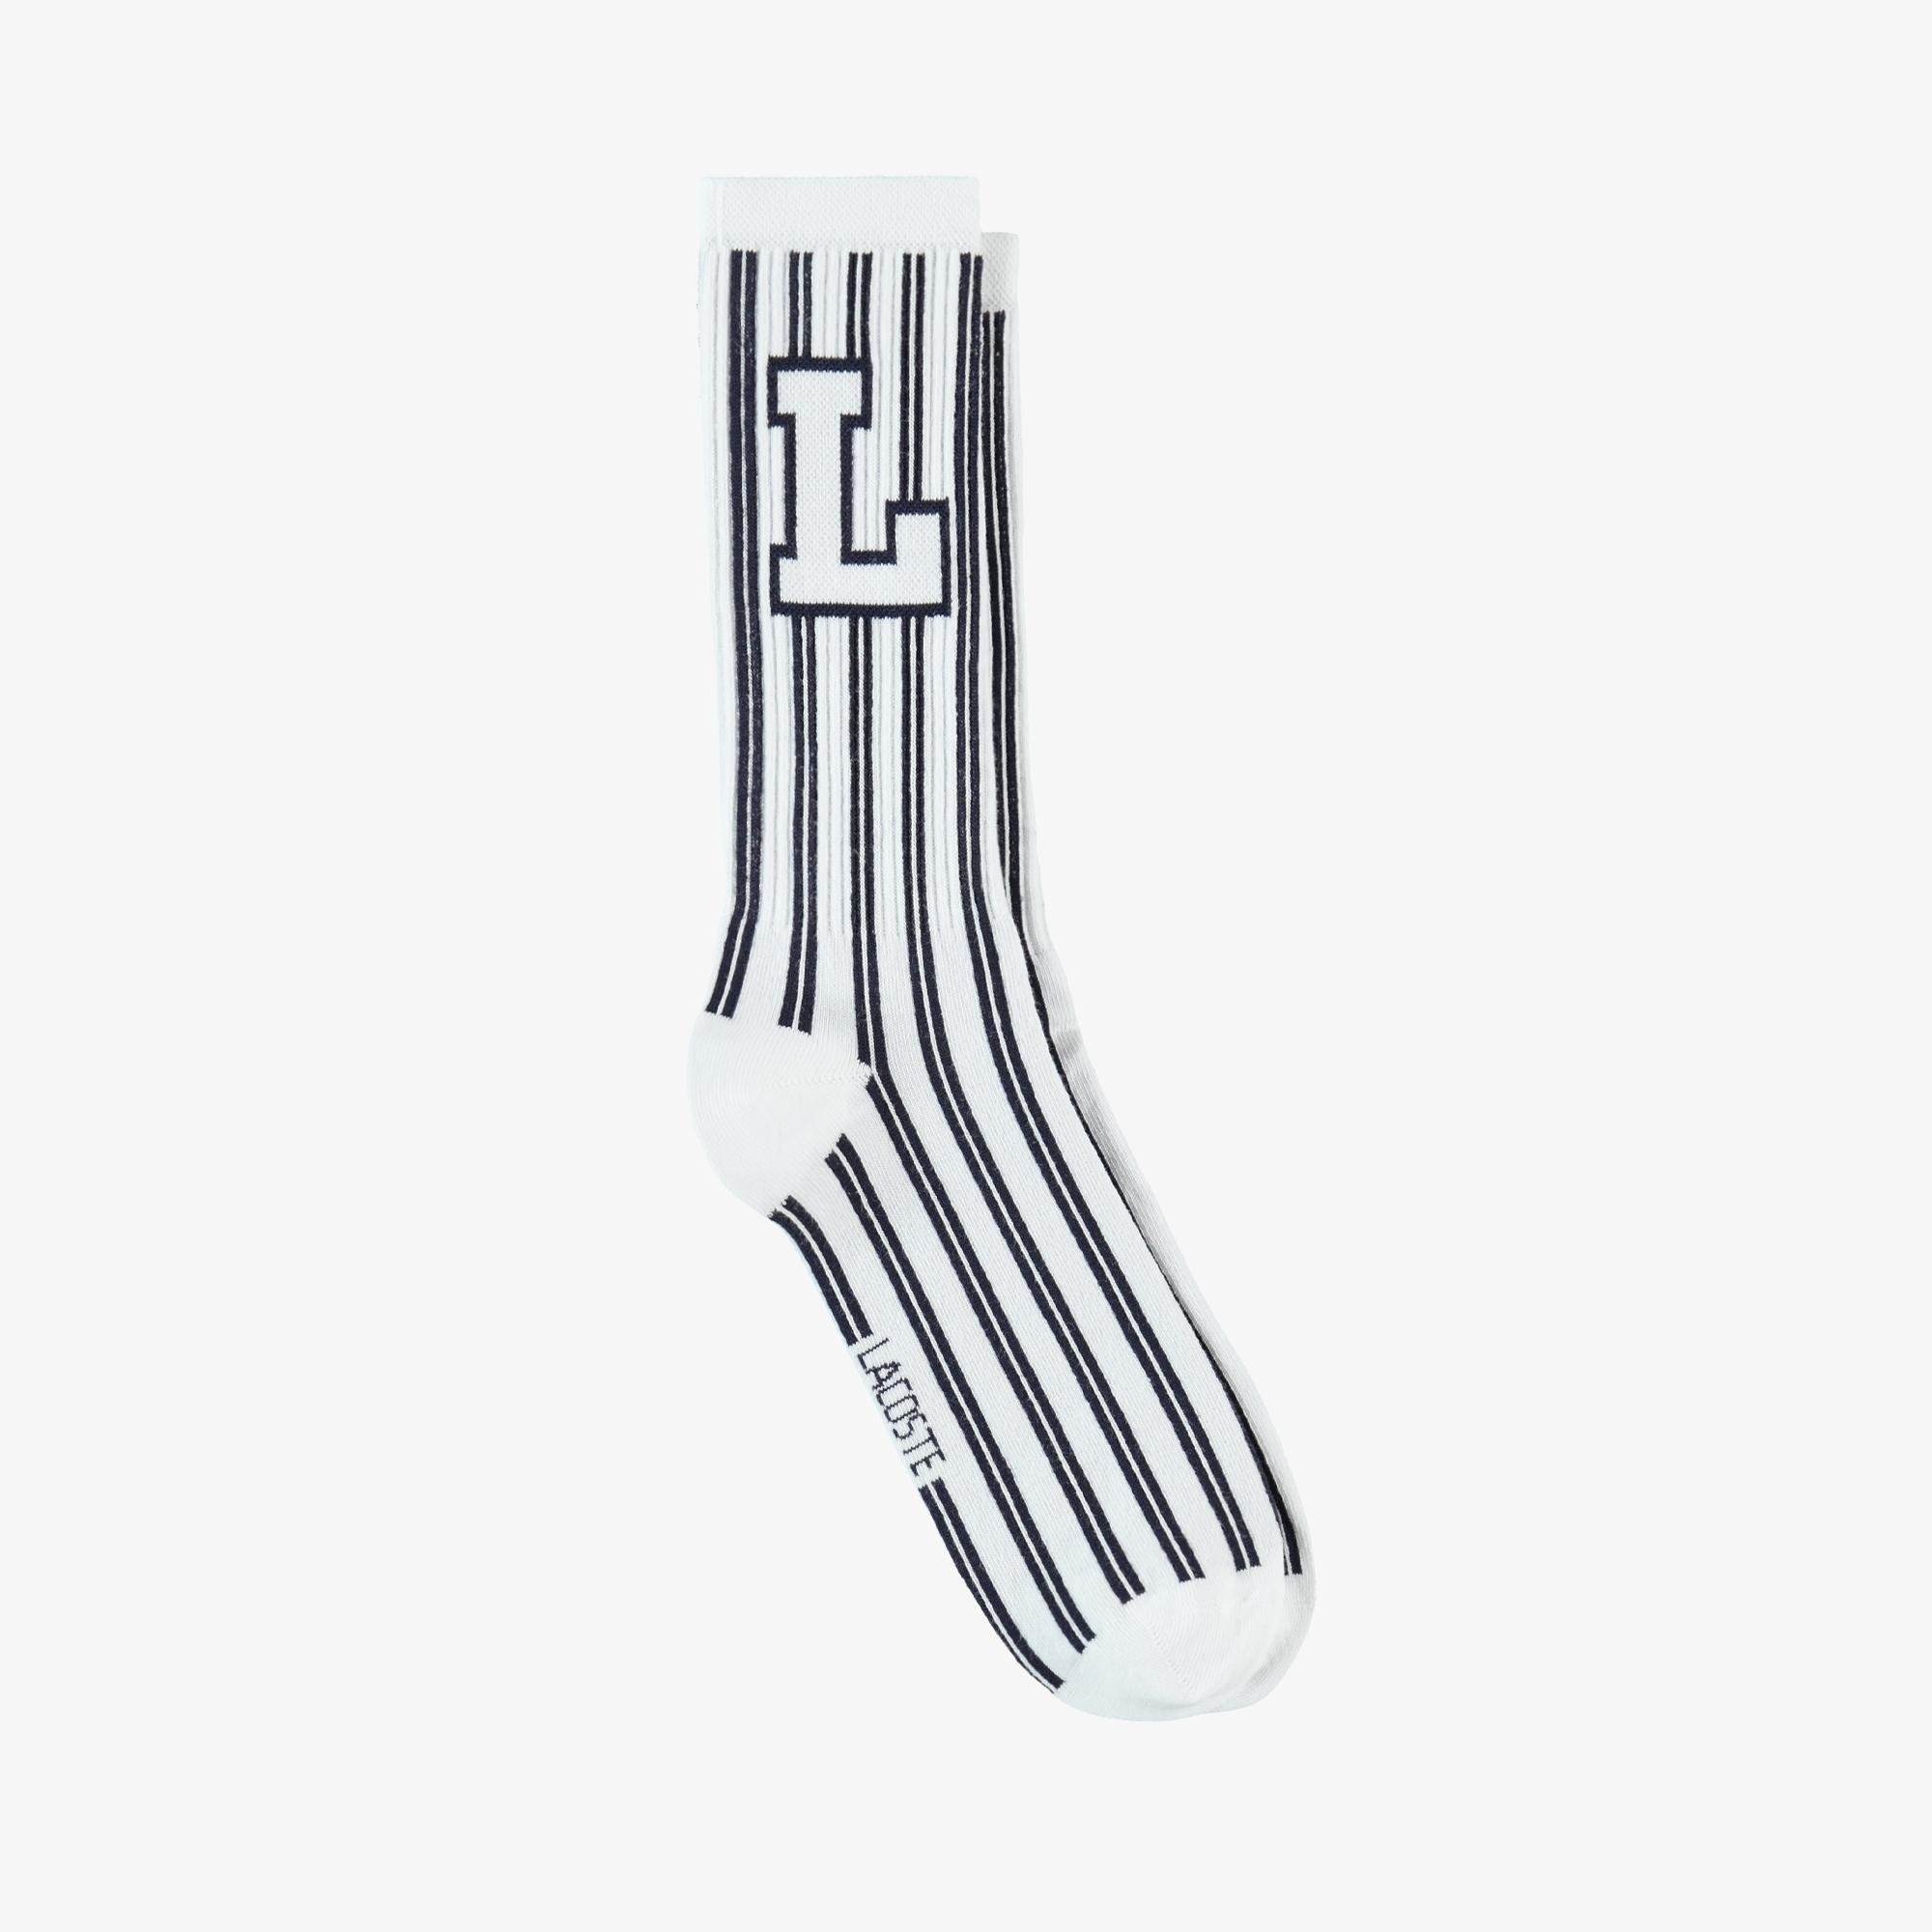 Lacoste Unisex Çizgili Beyaz Çorap